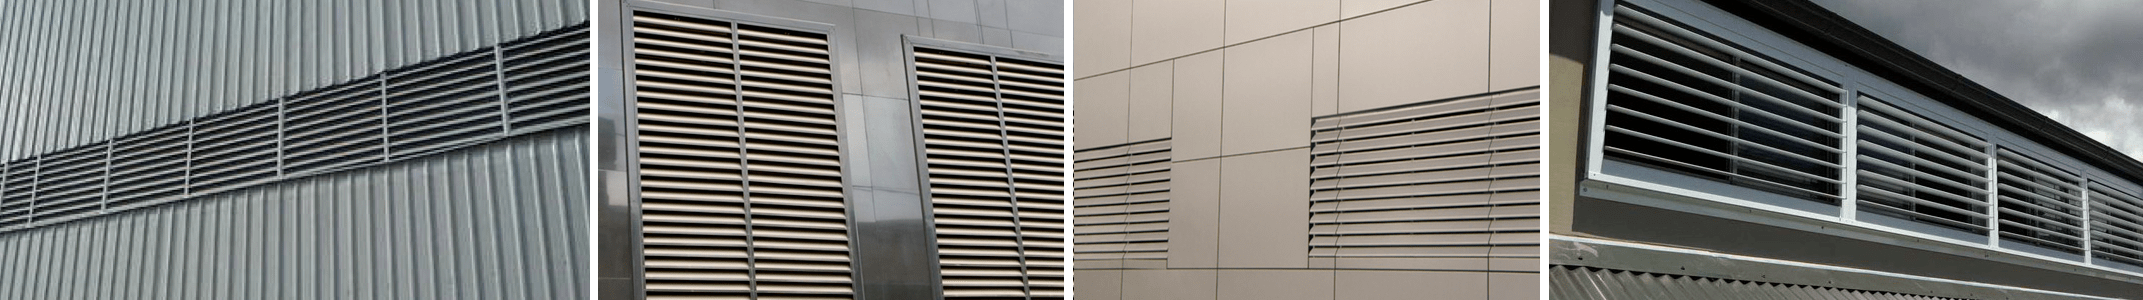 Наружные вентиляционные решетки металлические для фасада здания